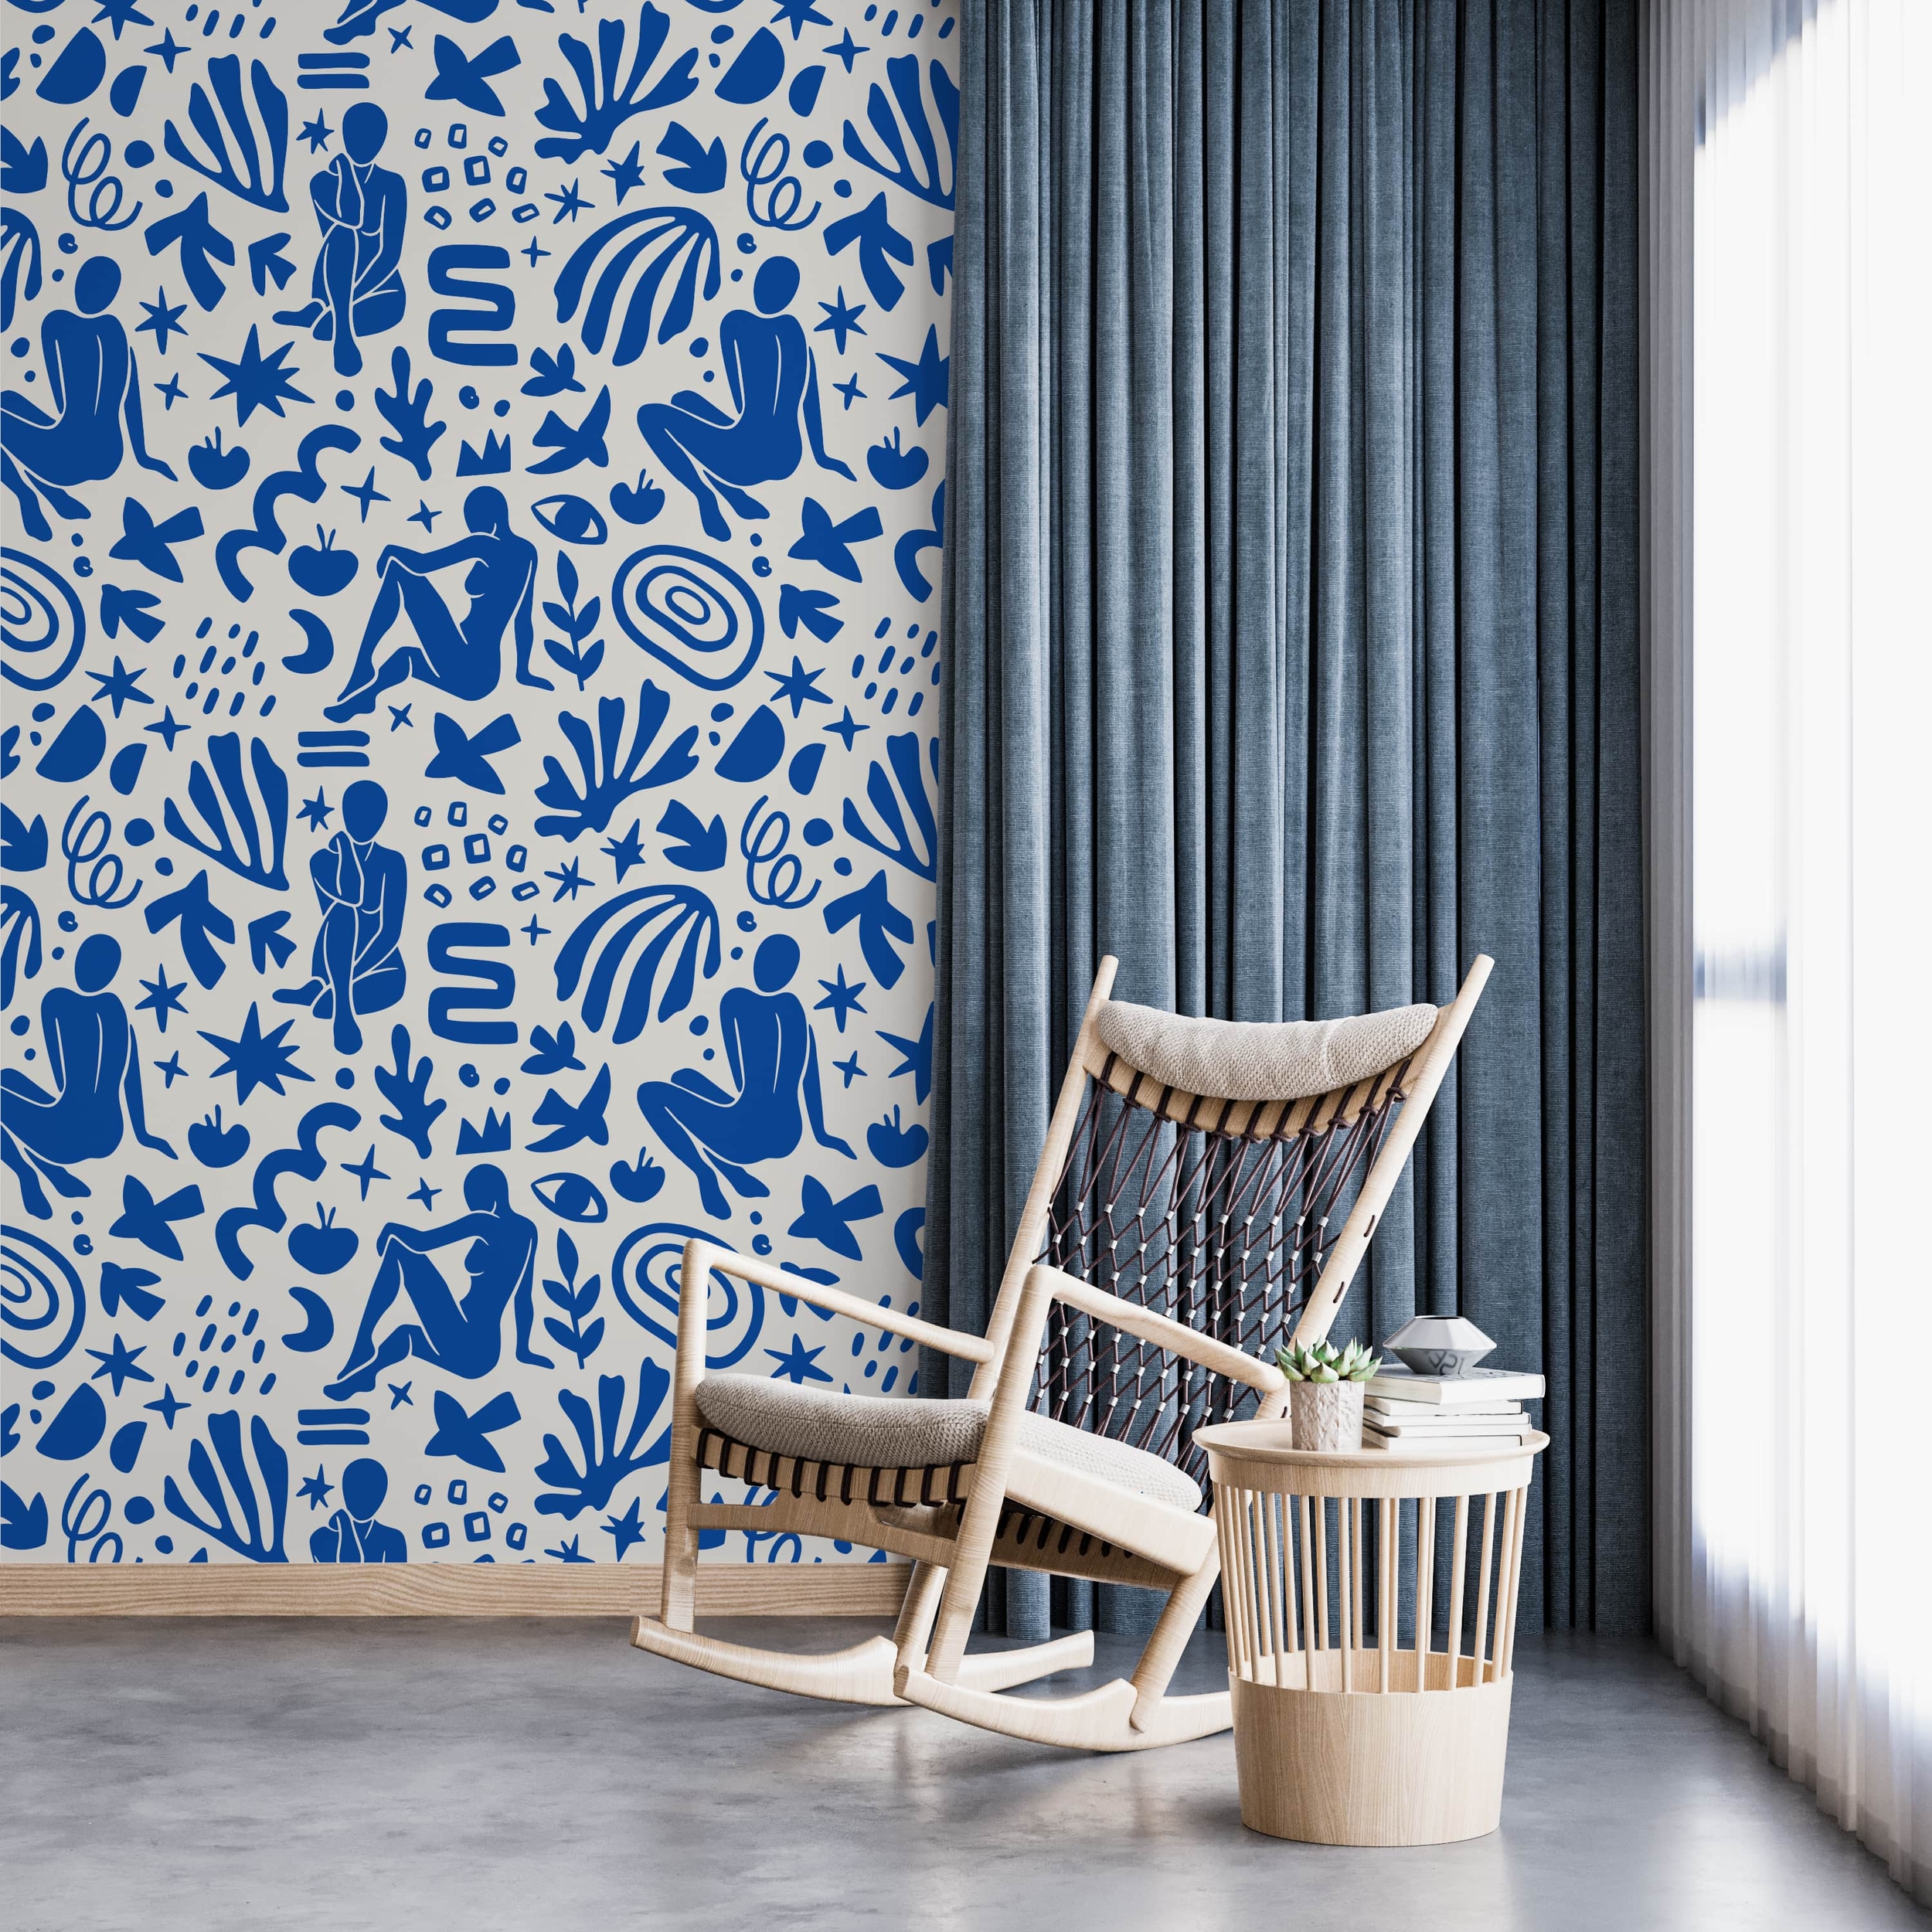 PP98-mur-papier-peint-adhesif-decoratif-revetement-vinyle-motifs-inspiré-style-Matisse-féminin-renovation-meuble-mur-min